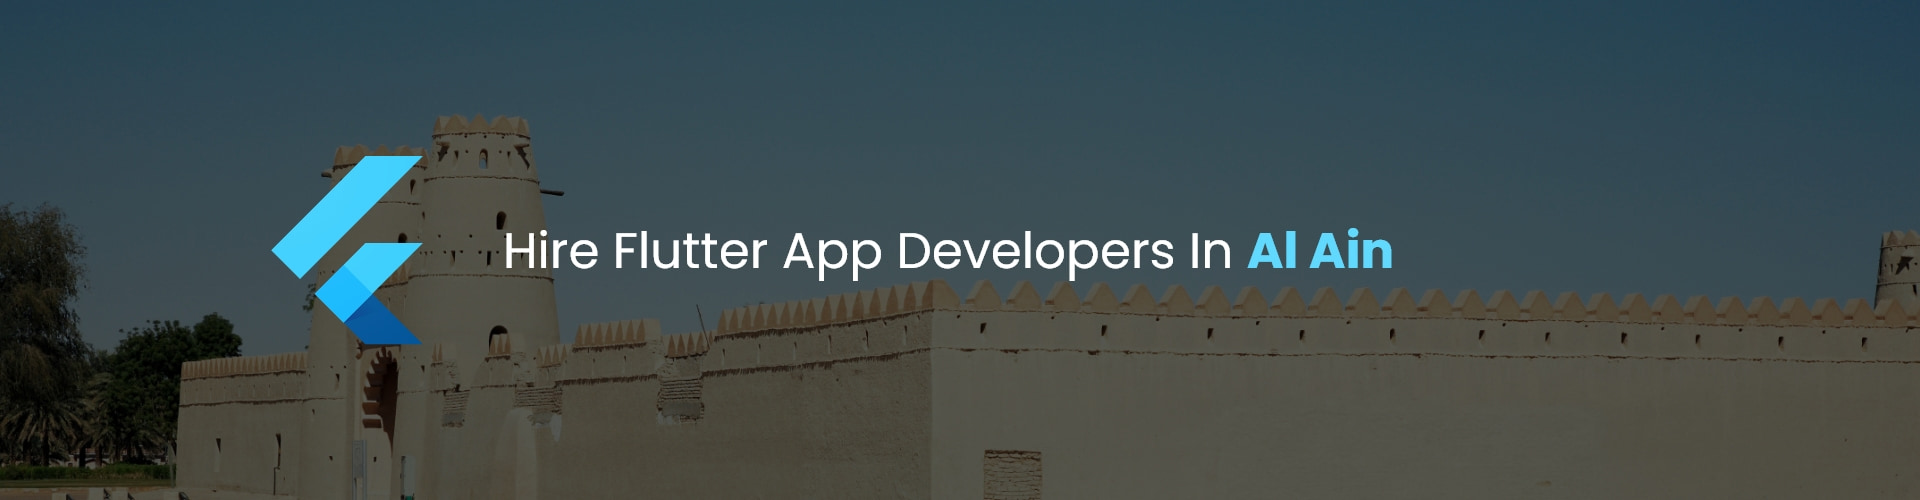 hire flutter app developers in al ain